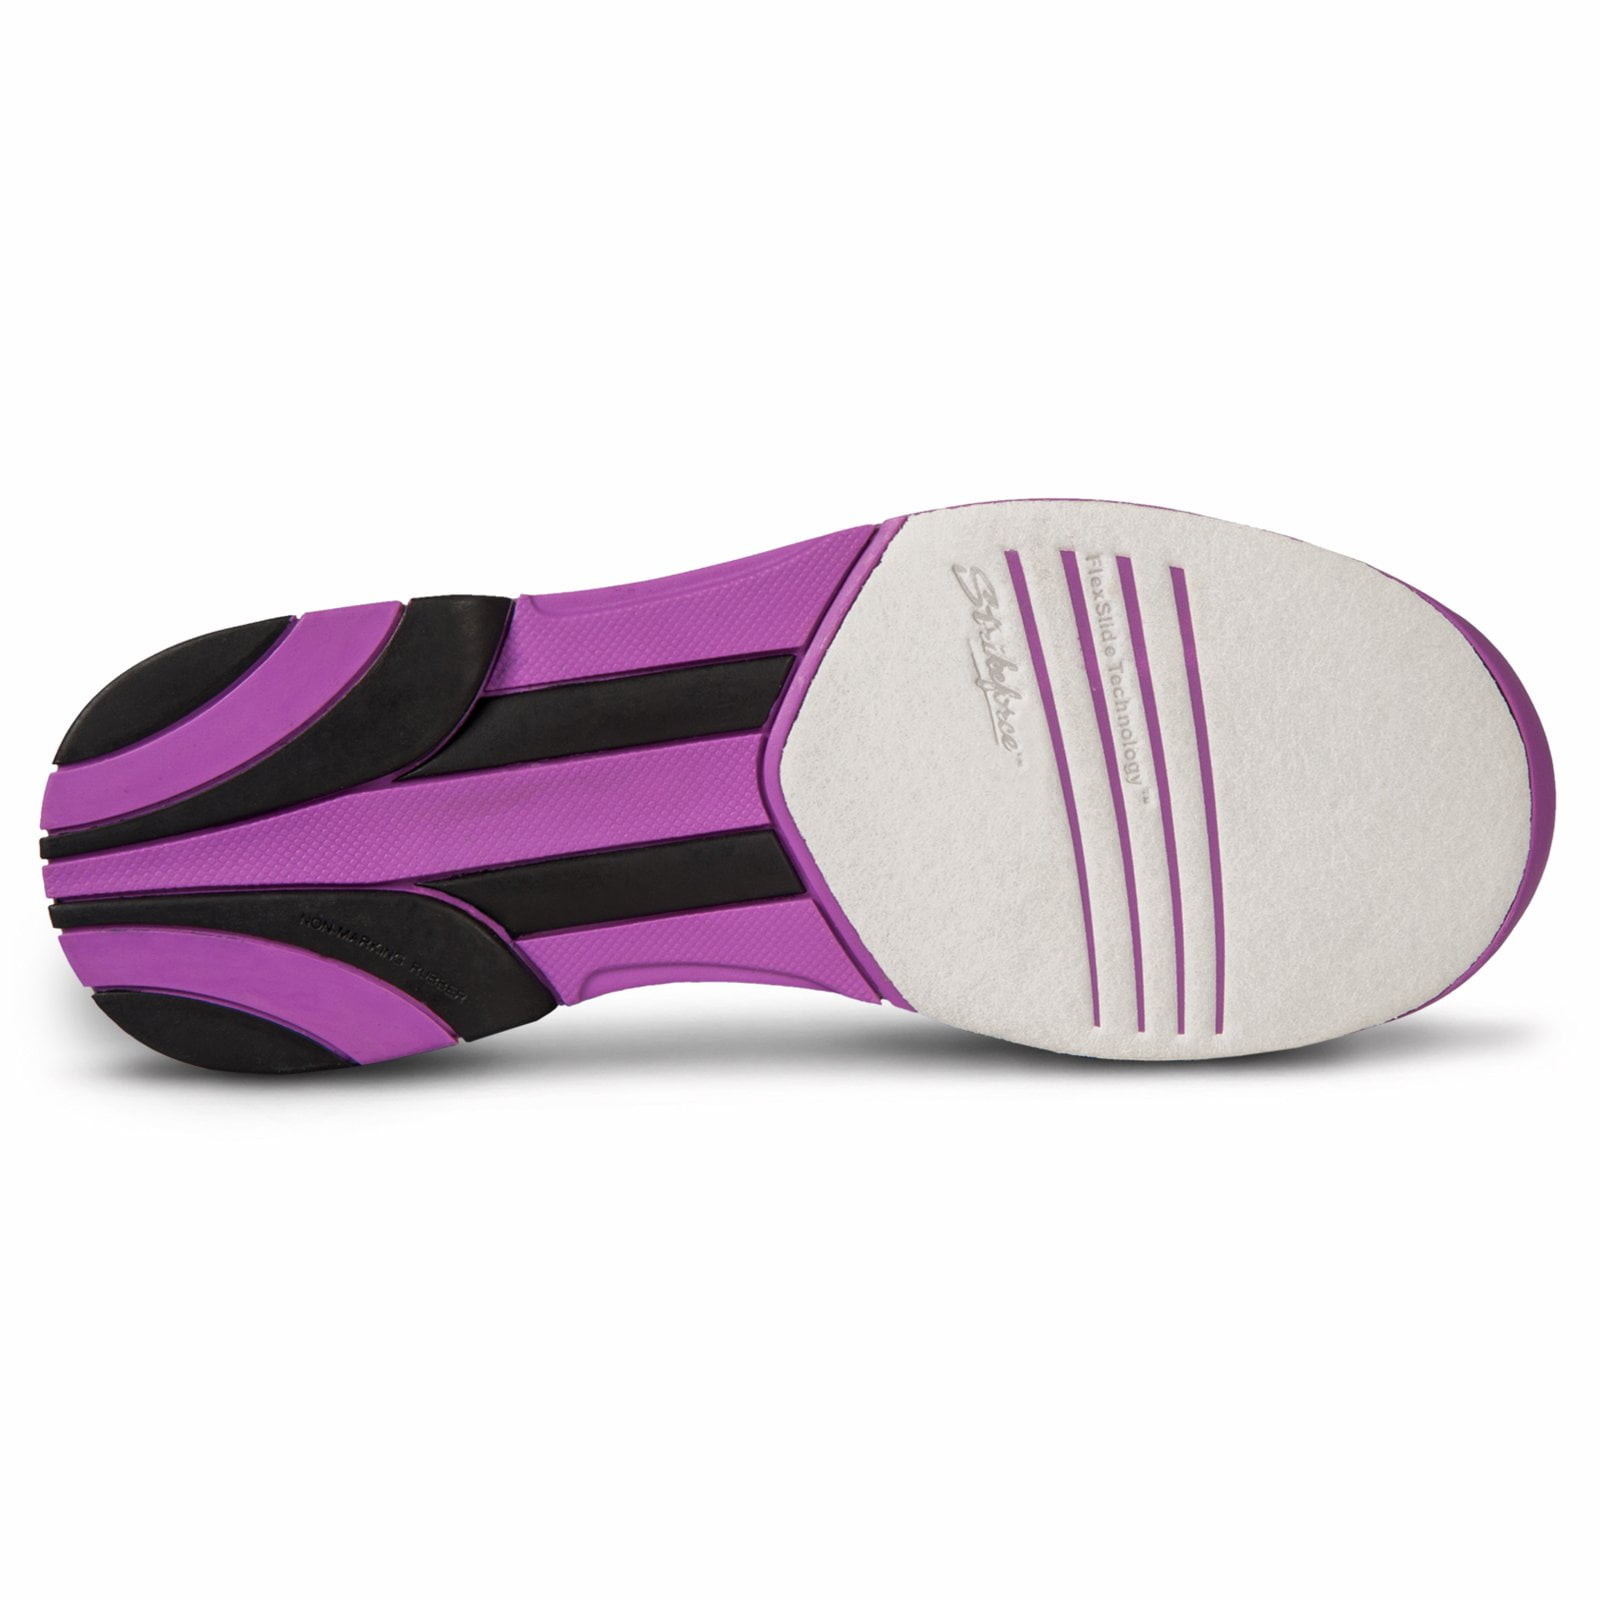 KR Strikeforce Spirit Lite White/Pink Womens Bowling Shoes Size 8.5 